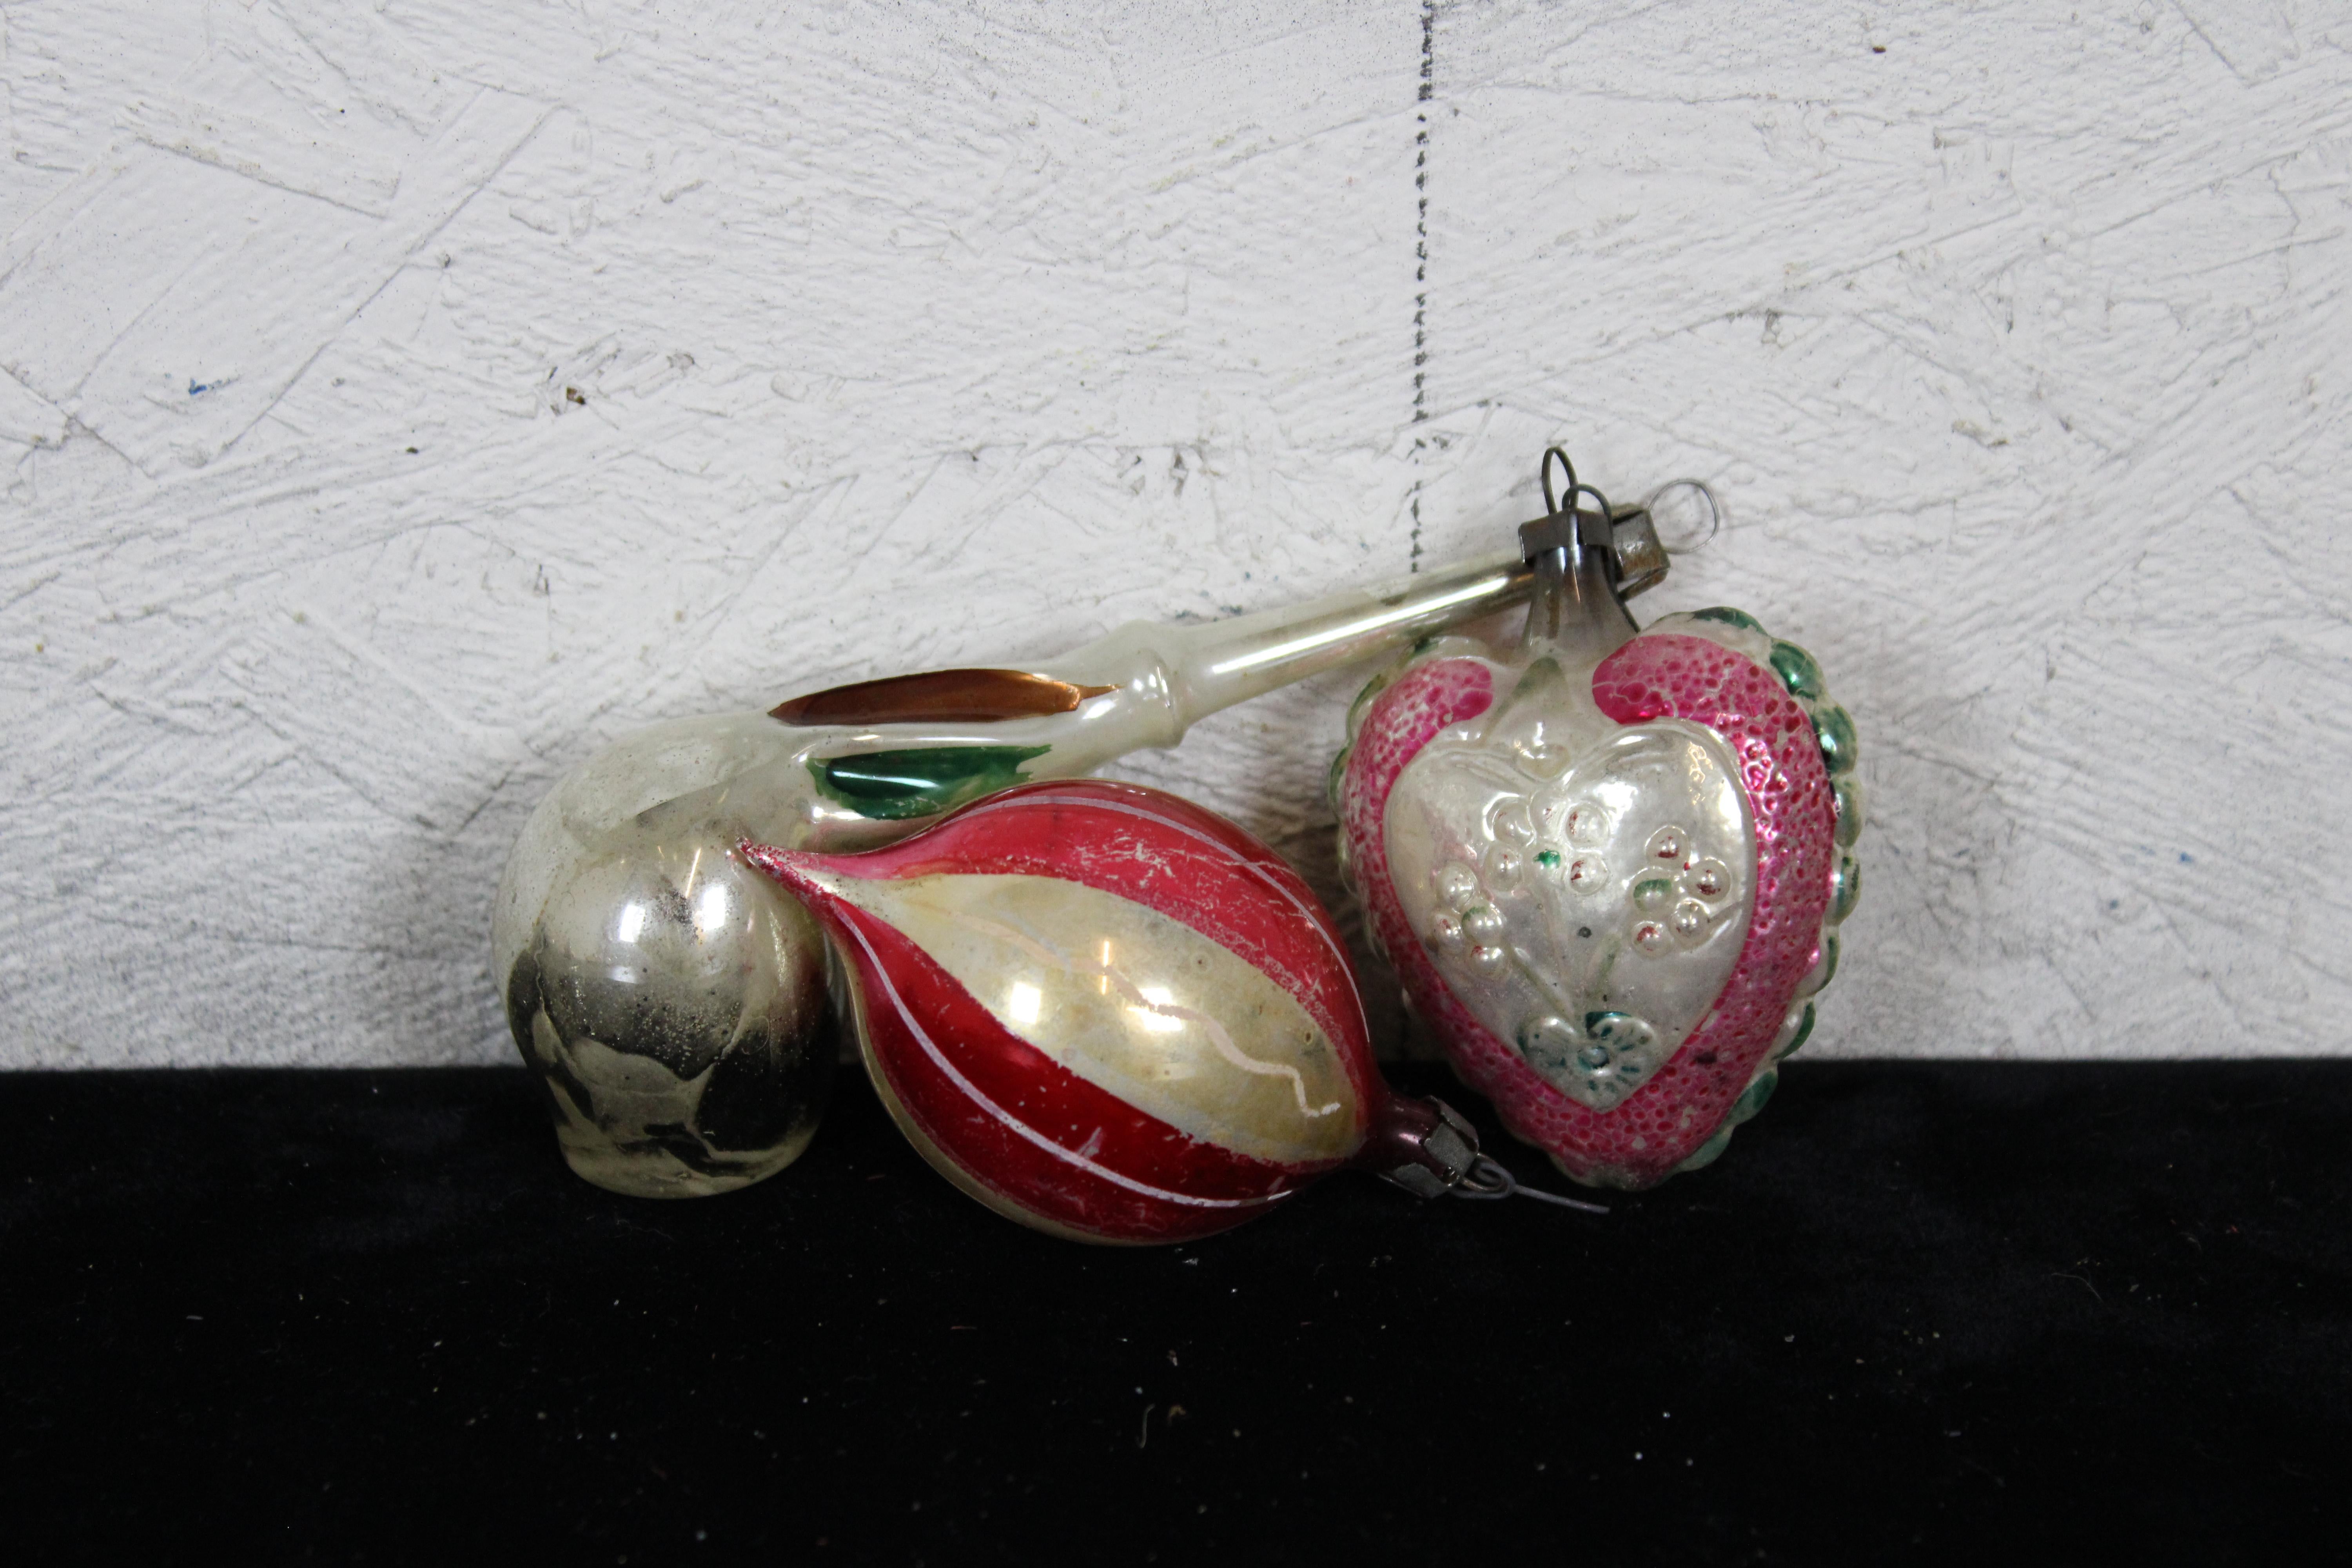 kugel mercury glass ornaments